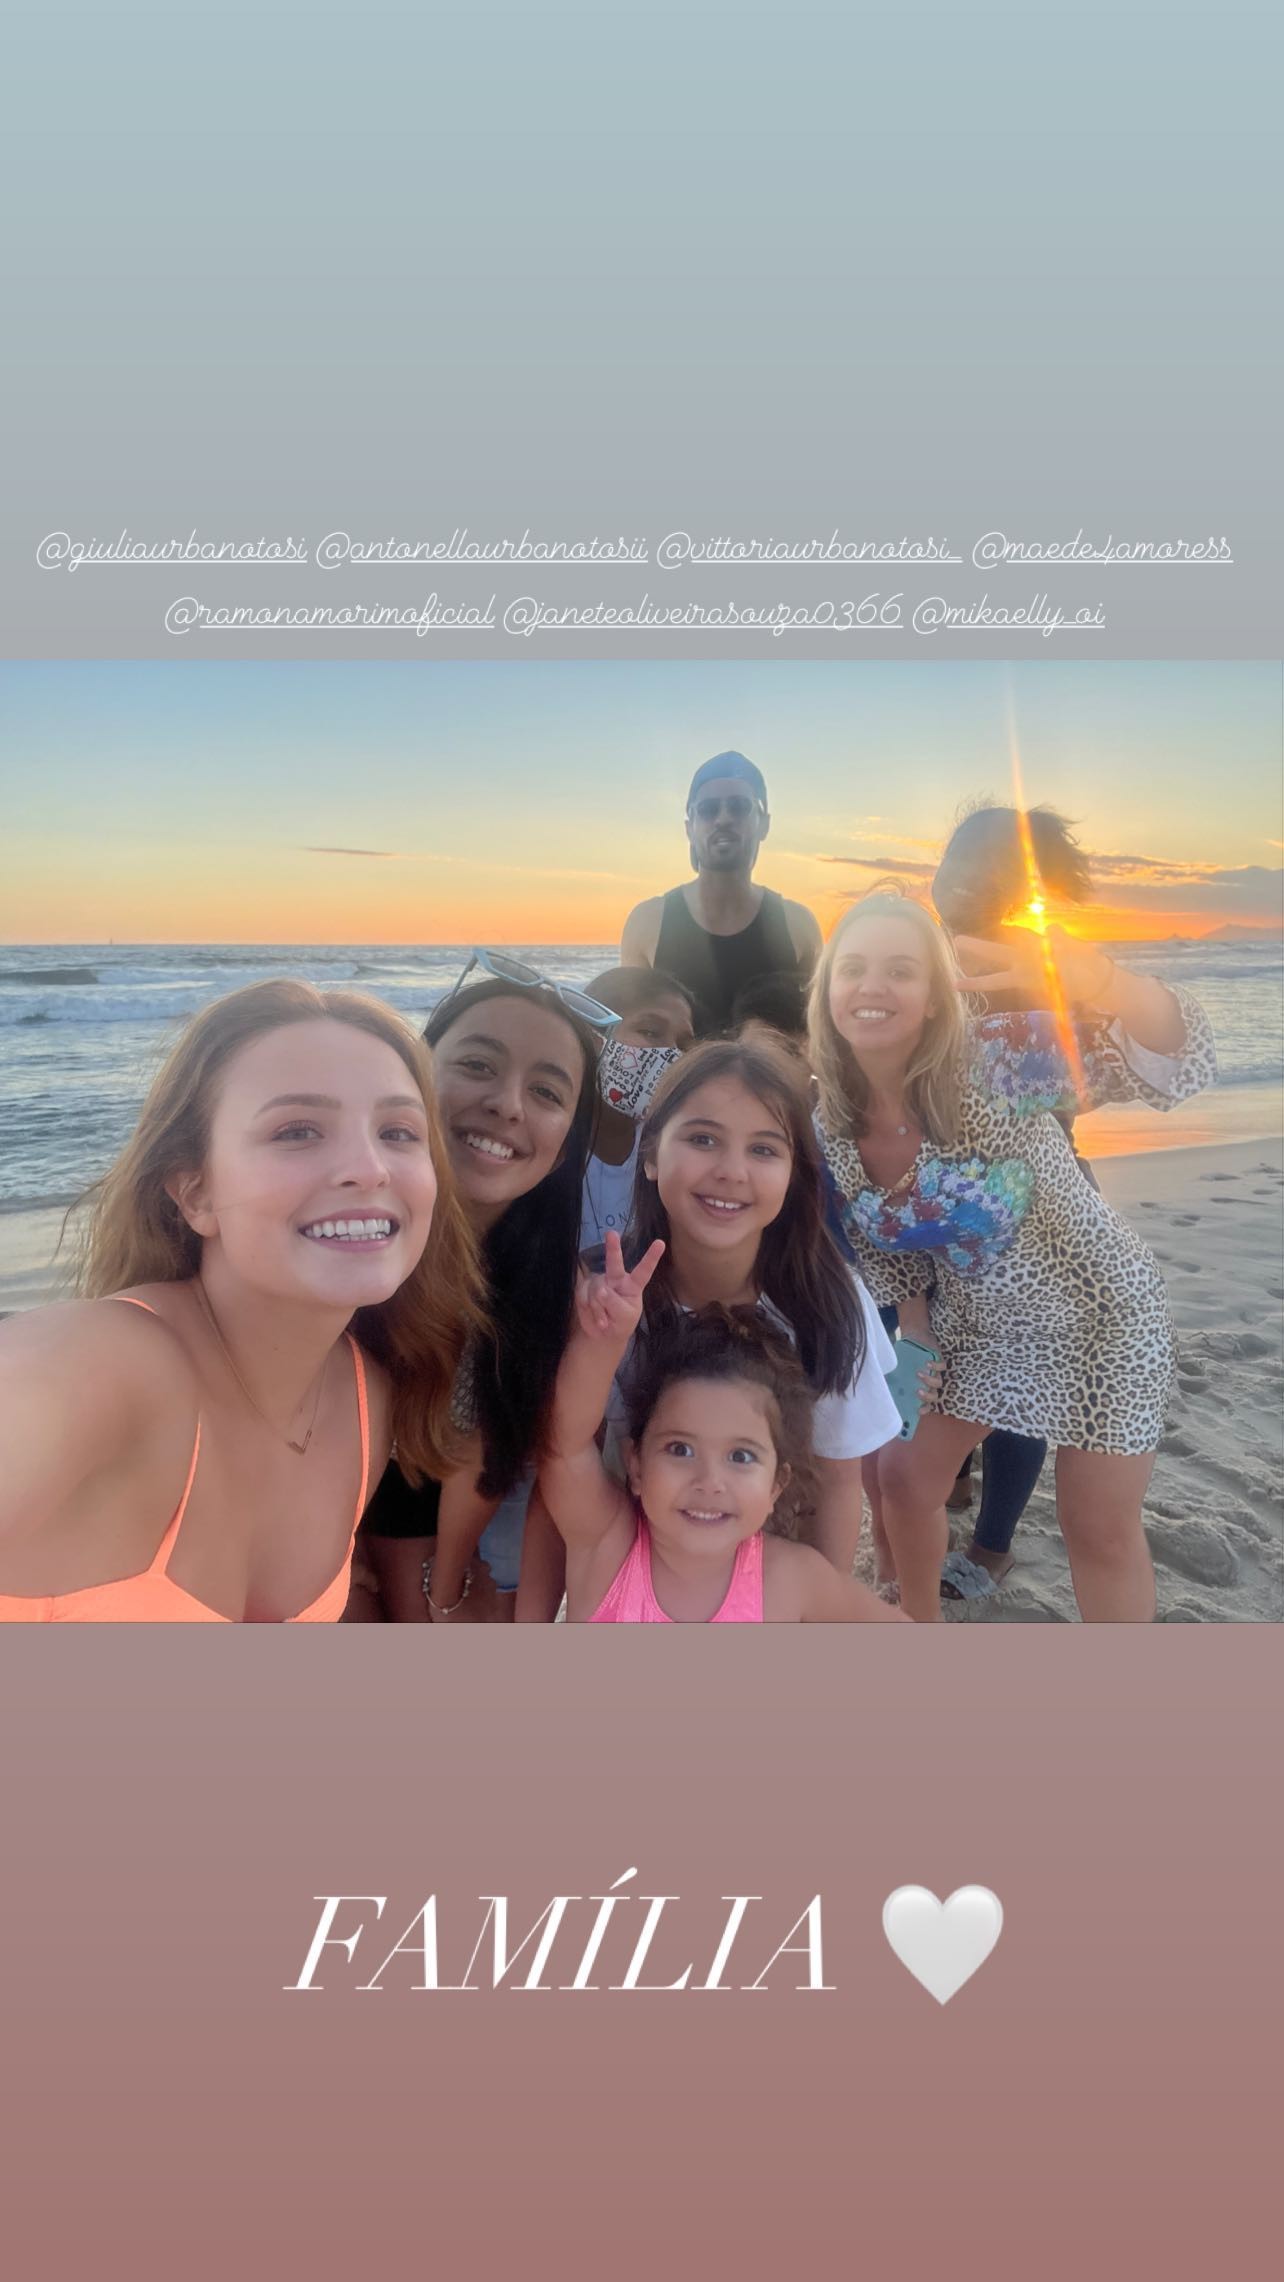 Larissa Manoela curte praia com família e amigos (Foto: Reprodução/Instagram)